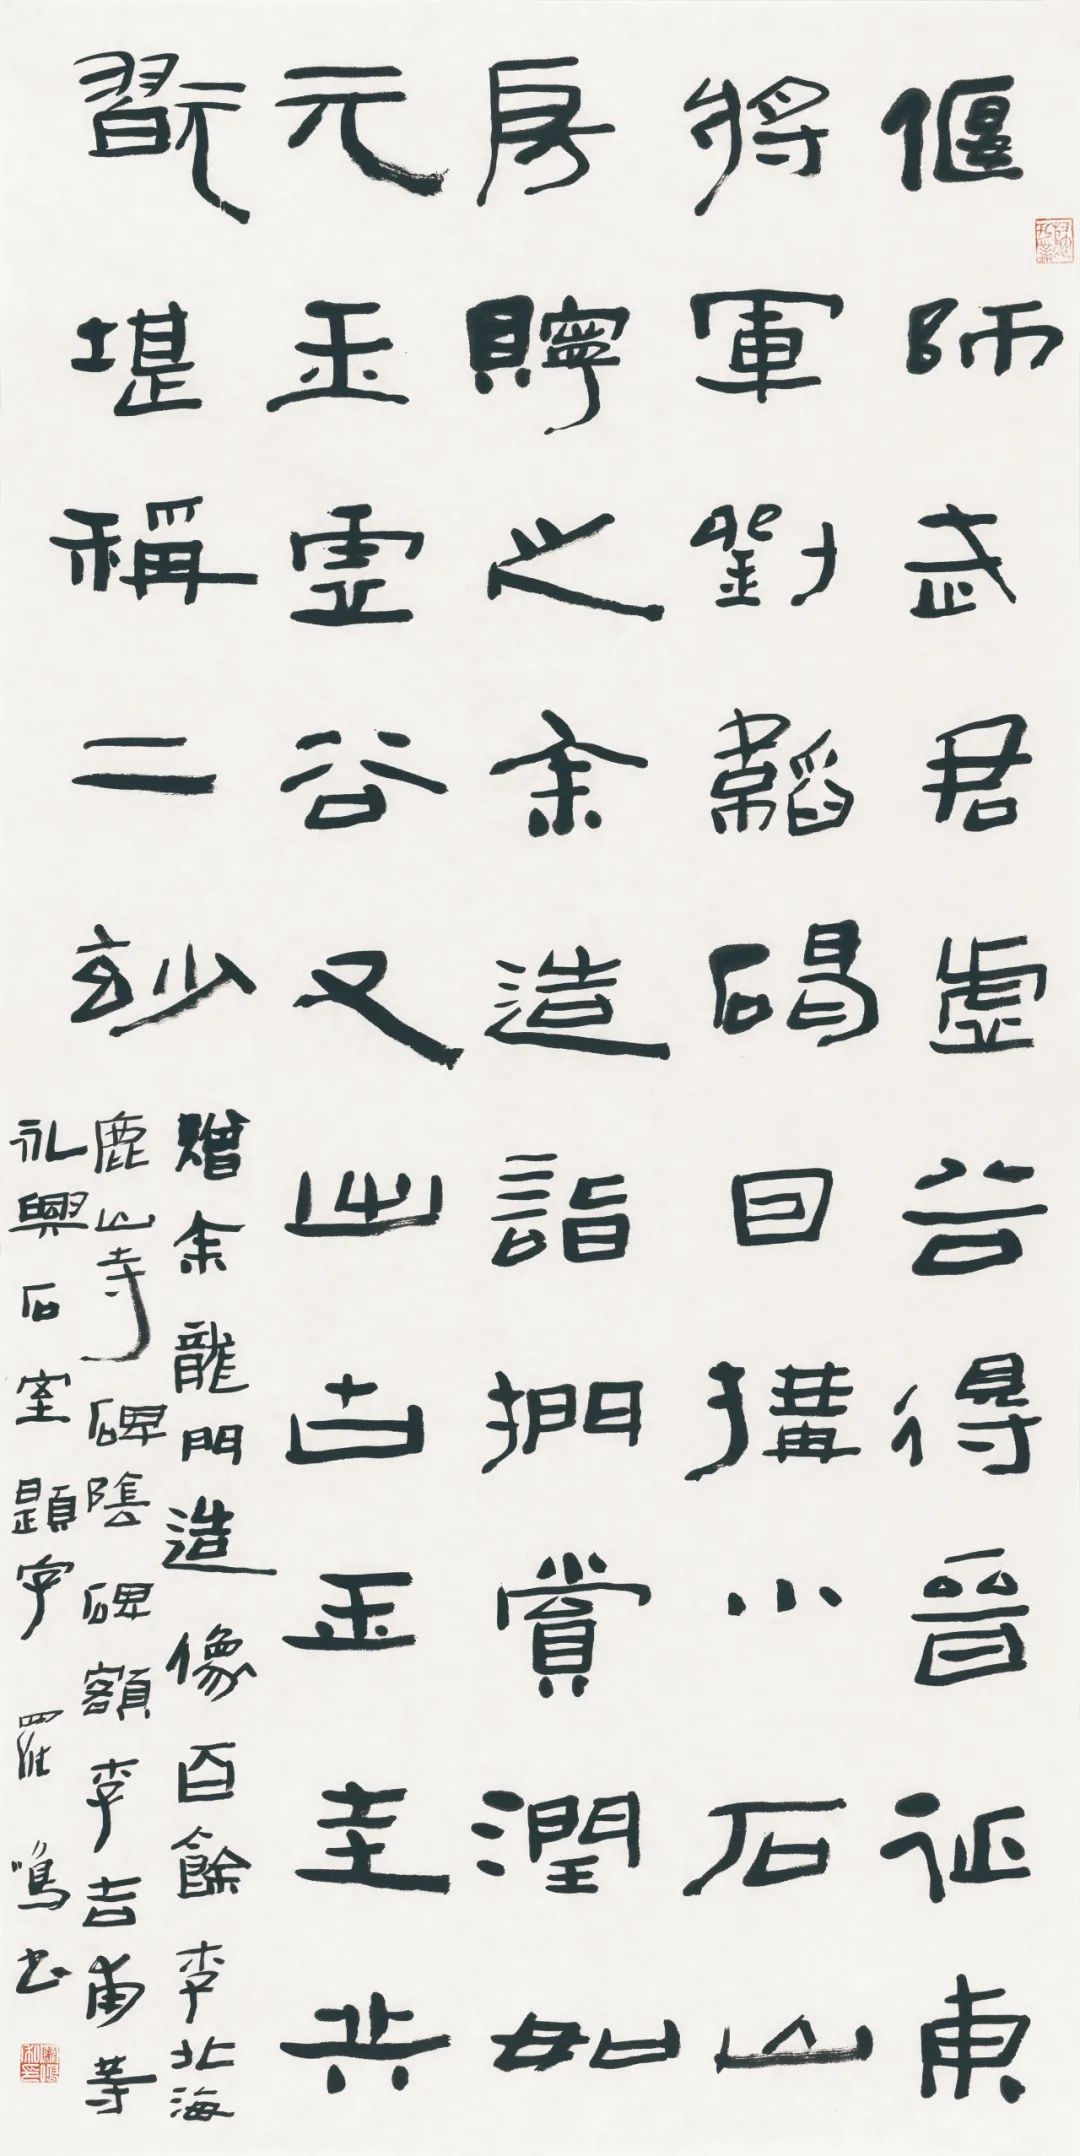 藏·展览丨纸笺传情，笔墨放歌——河南书法名家邀请展 12月24日开幕(图11)